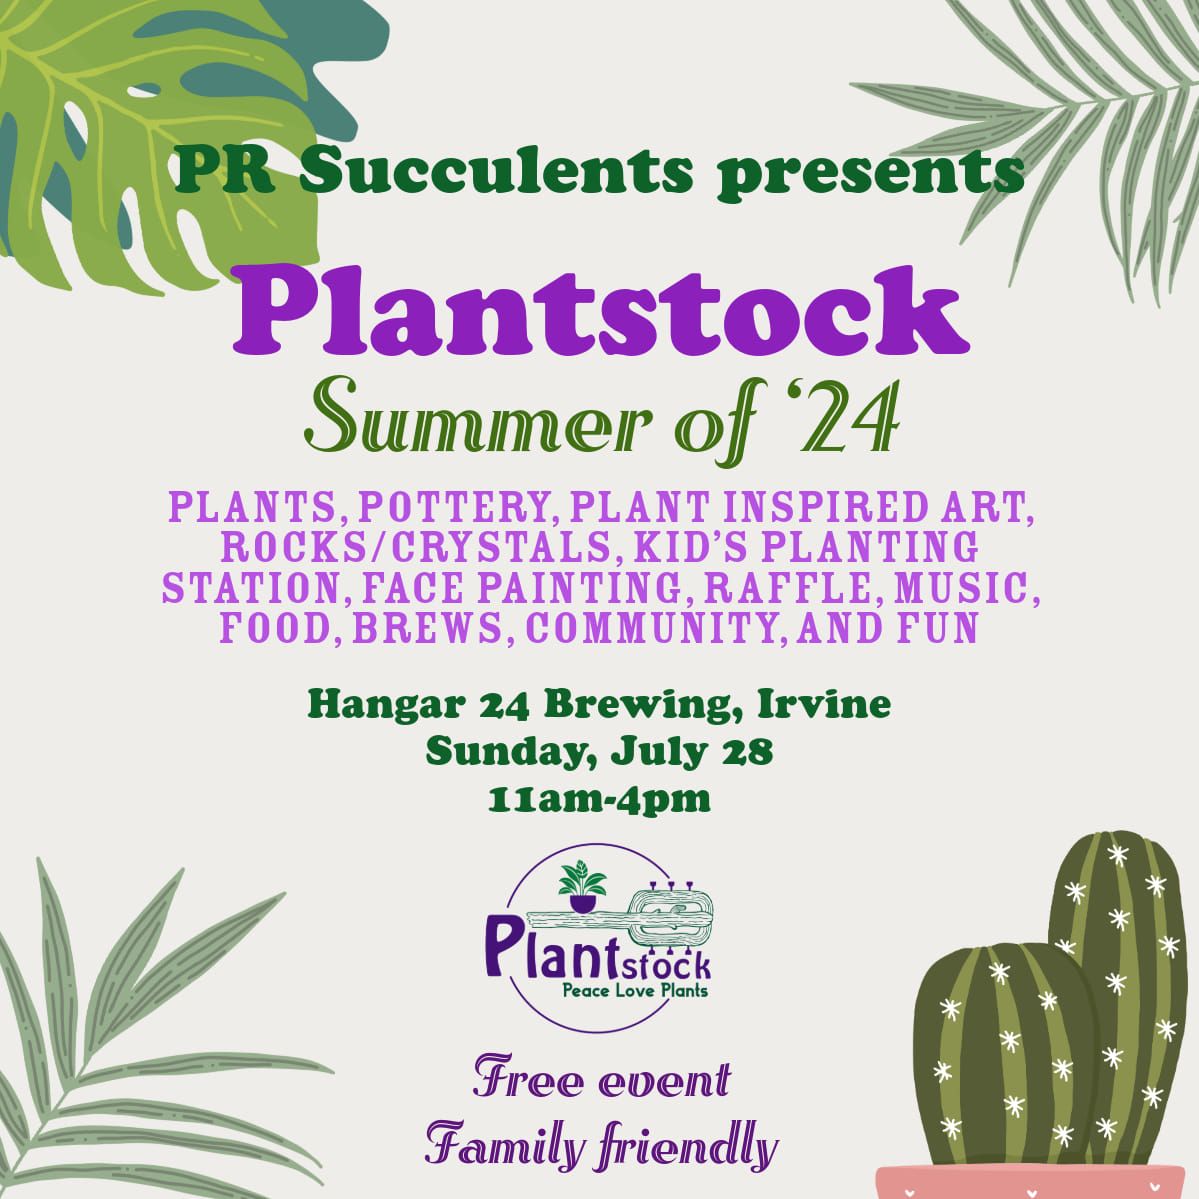 Plantstock Summer of '24